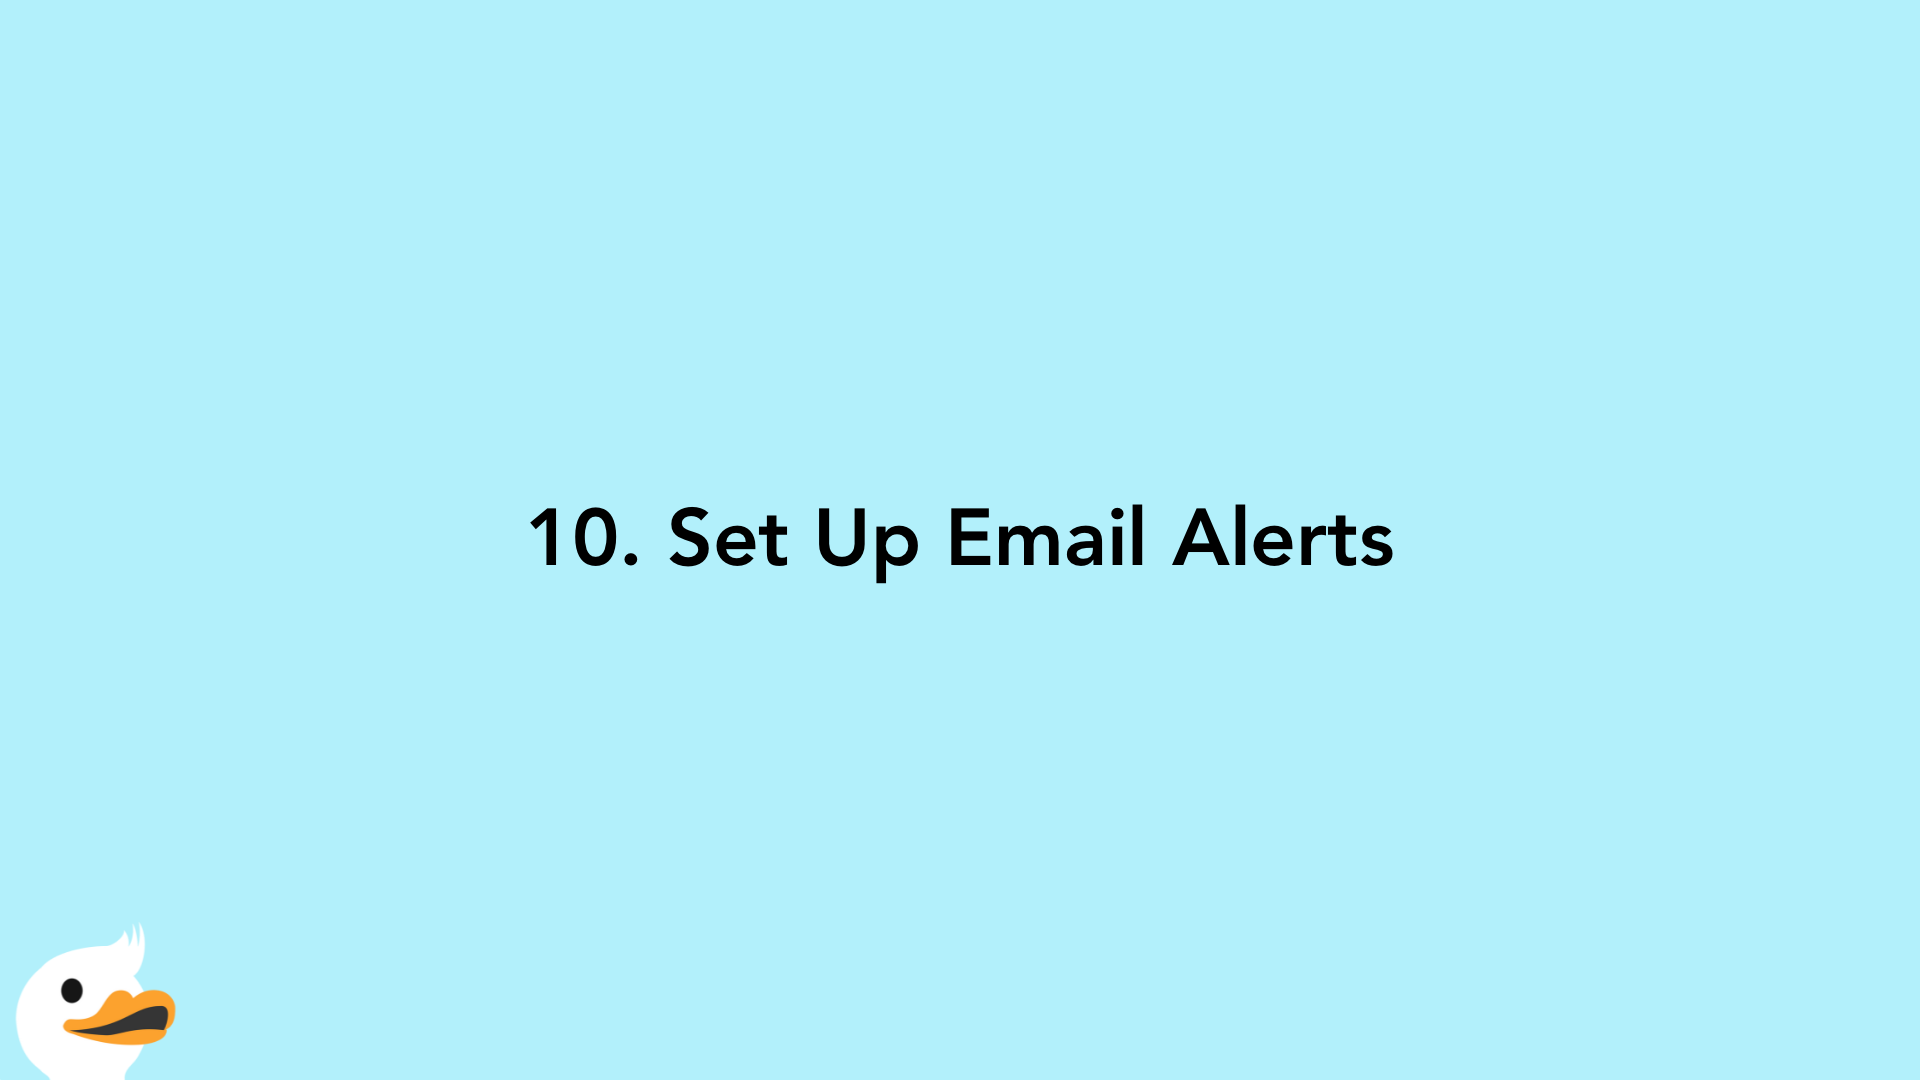 10. Set Up Email Alerts